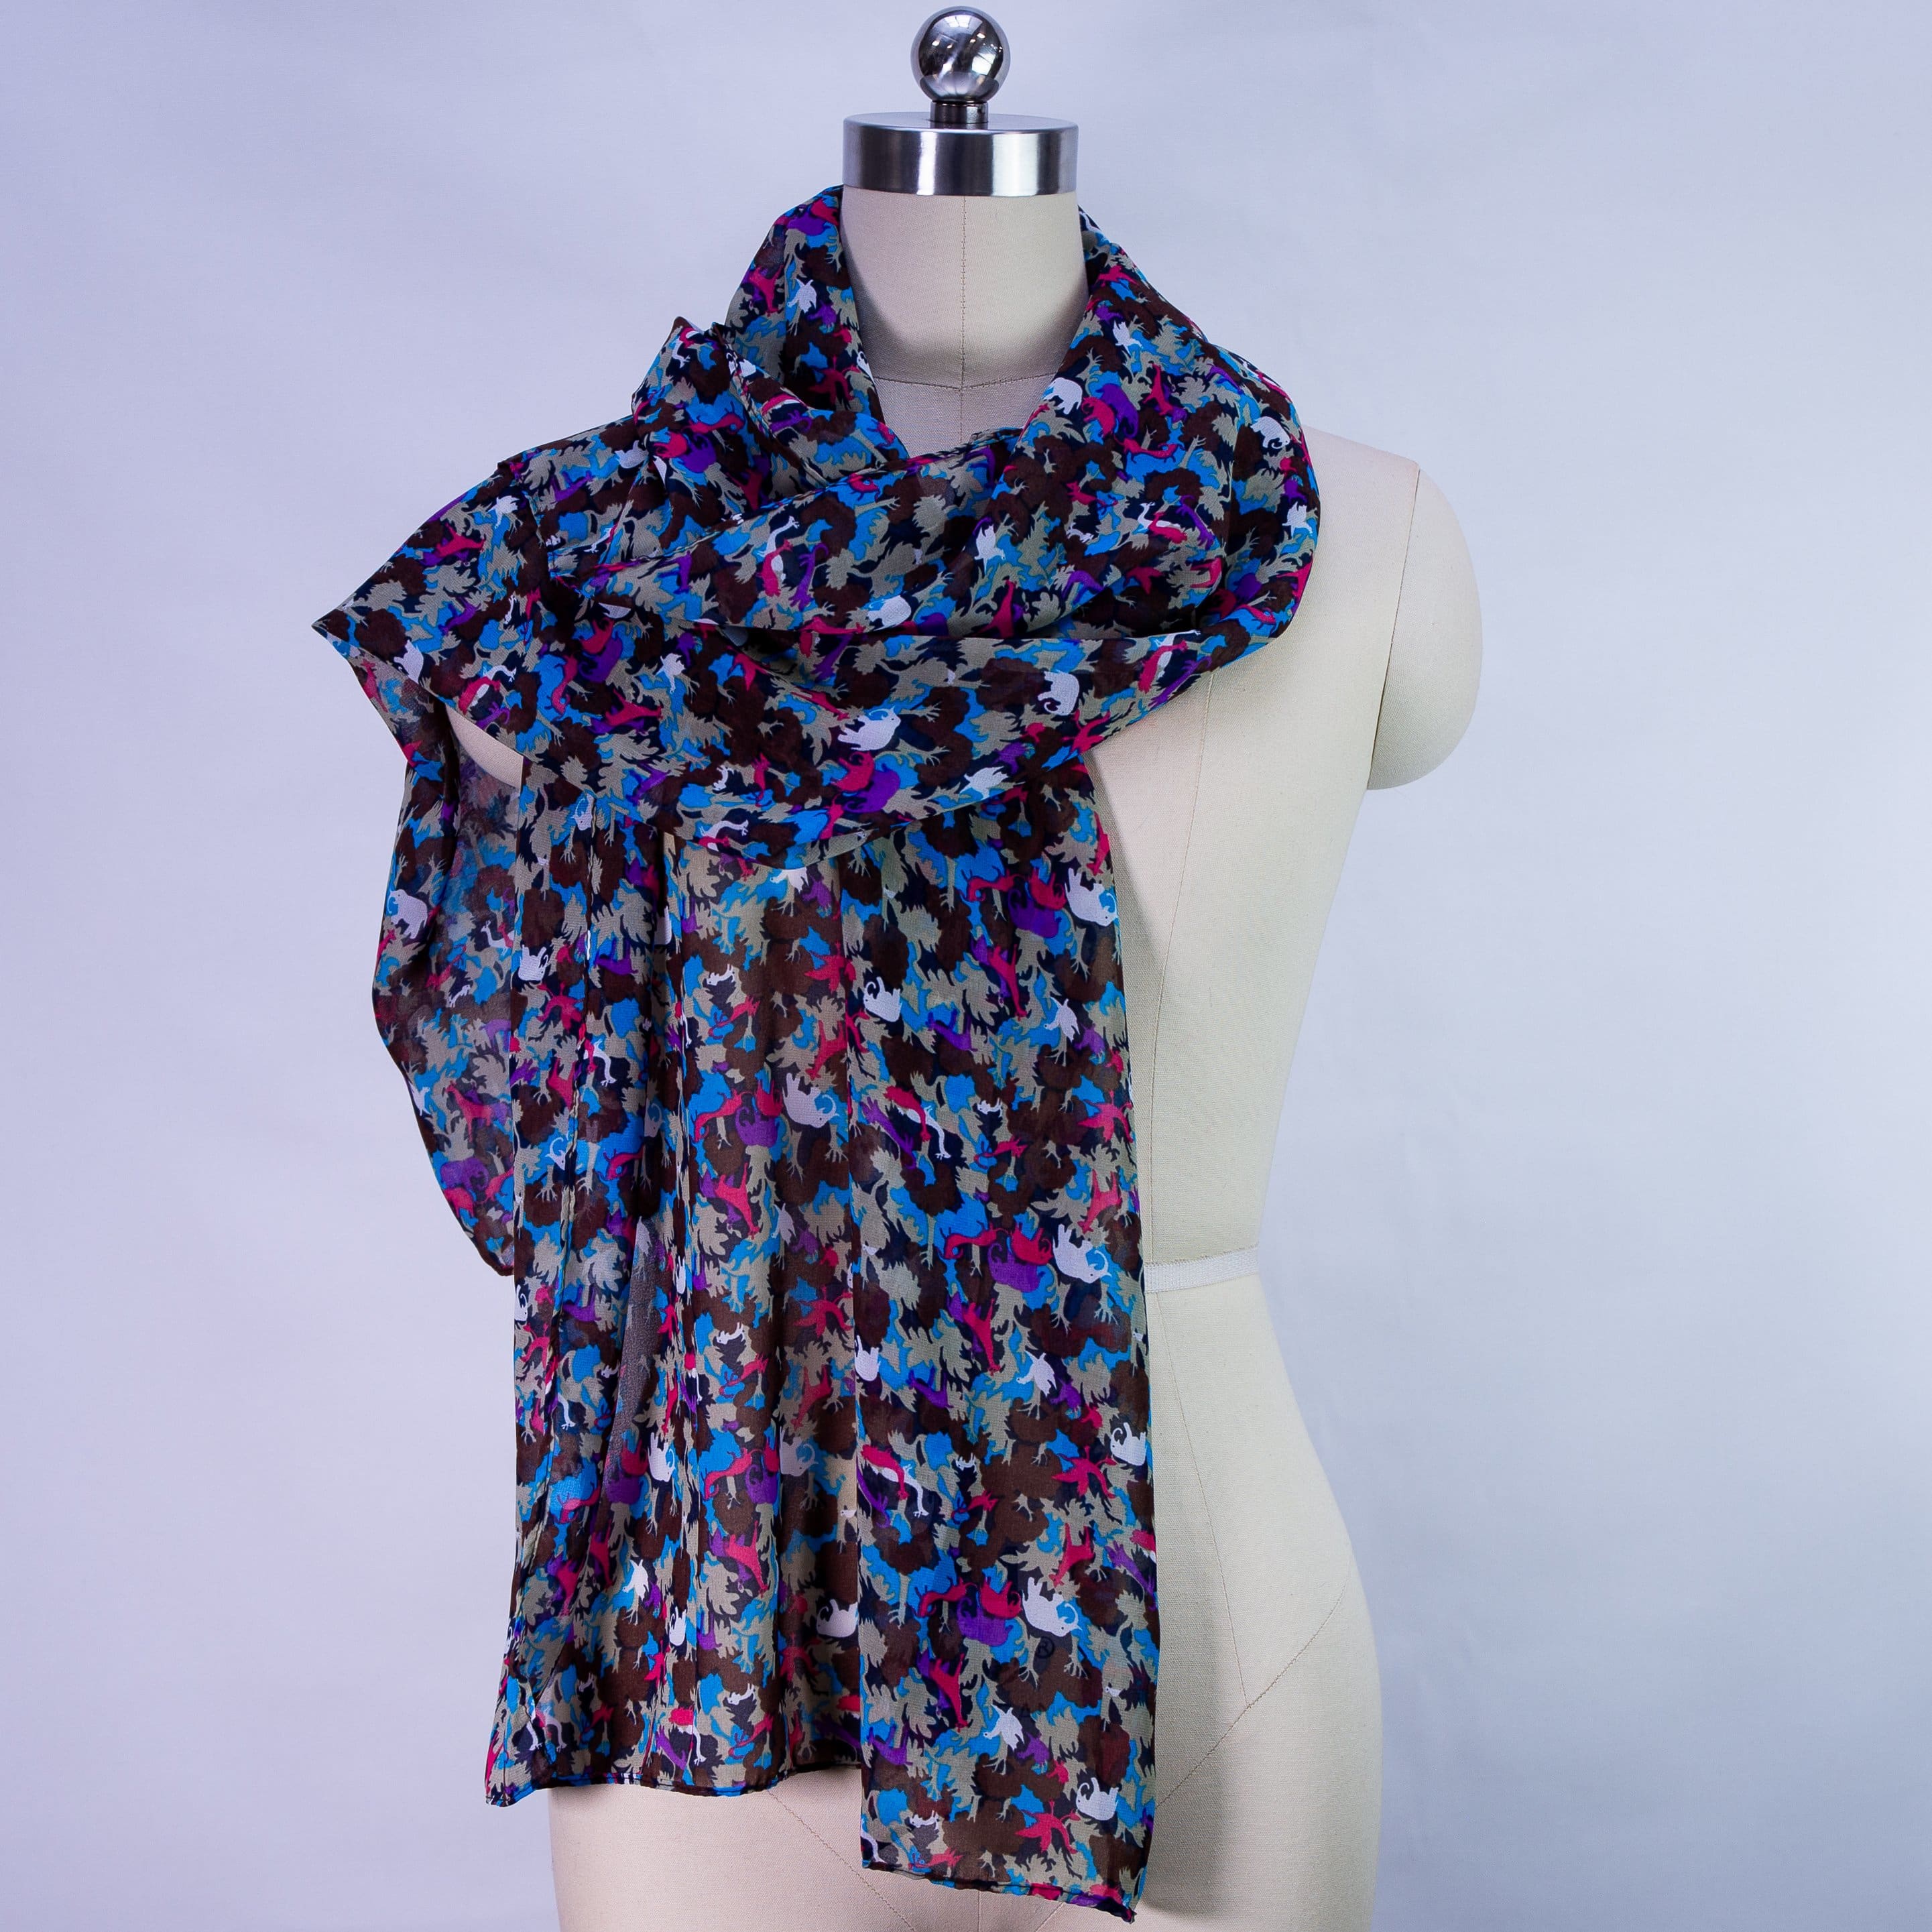 shawl Vaporeux Lucie - Blue - shawl